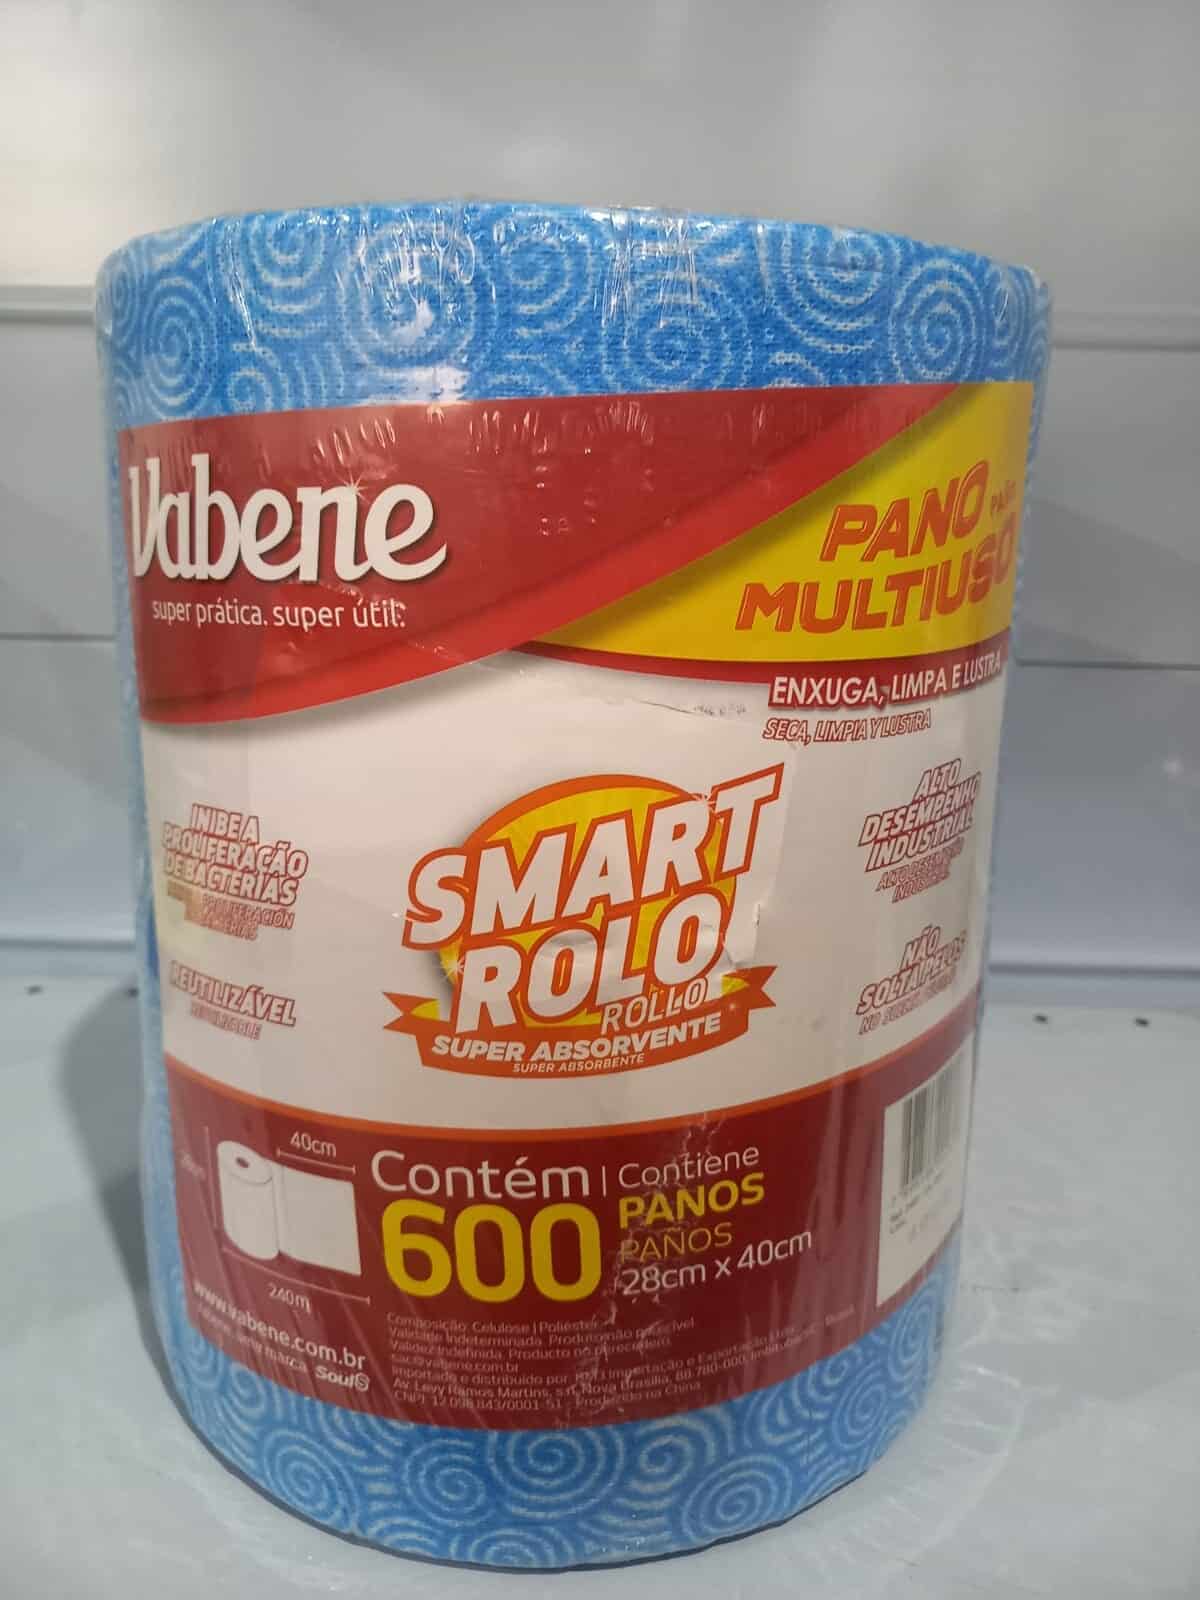 Imagem do produto Pano Multiuso - Smart Rolo - Vabene - 600 panos